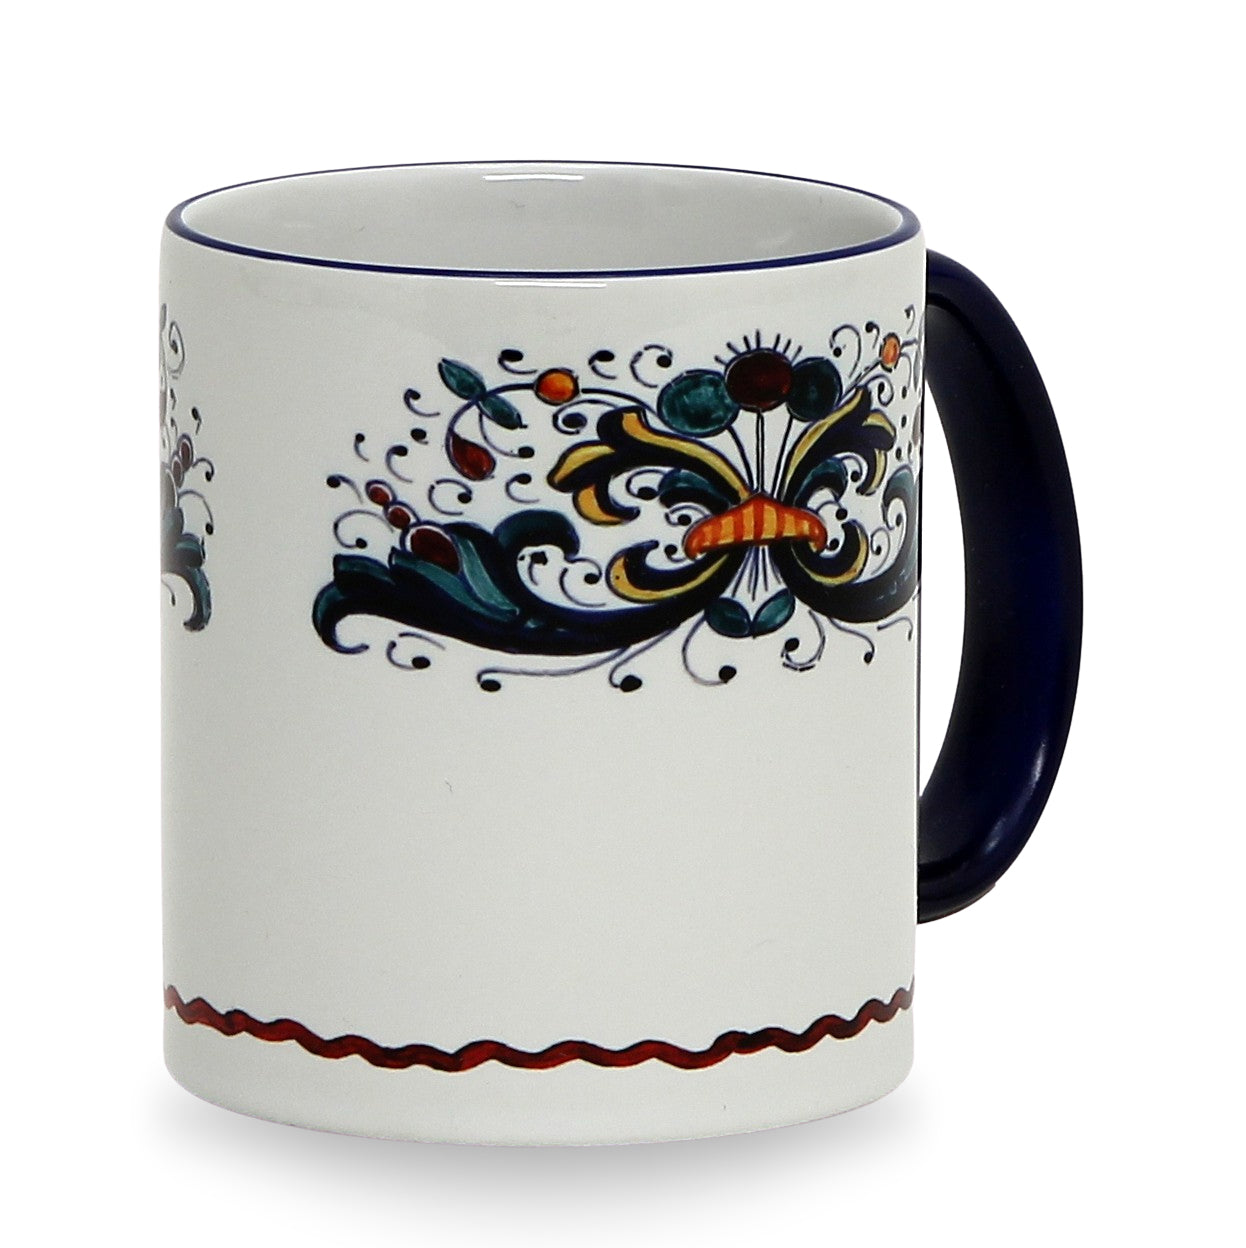 SUBLIMART: Printed Deruta style Mug with Blue Rim two sides design